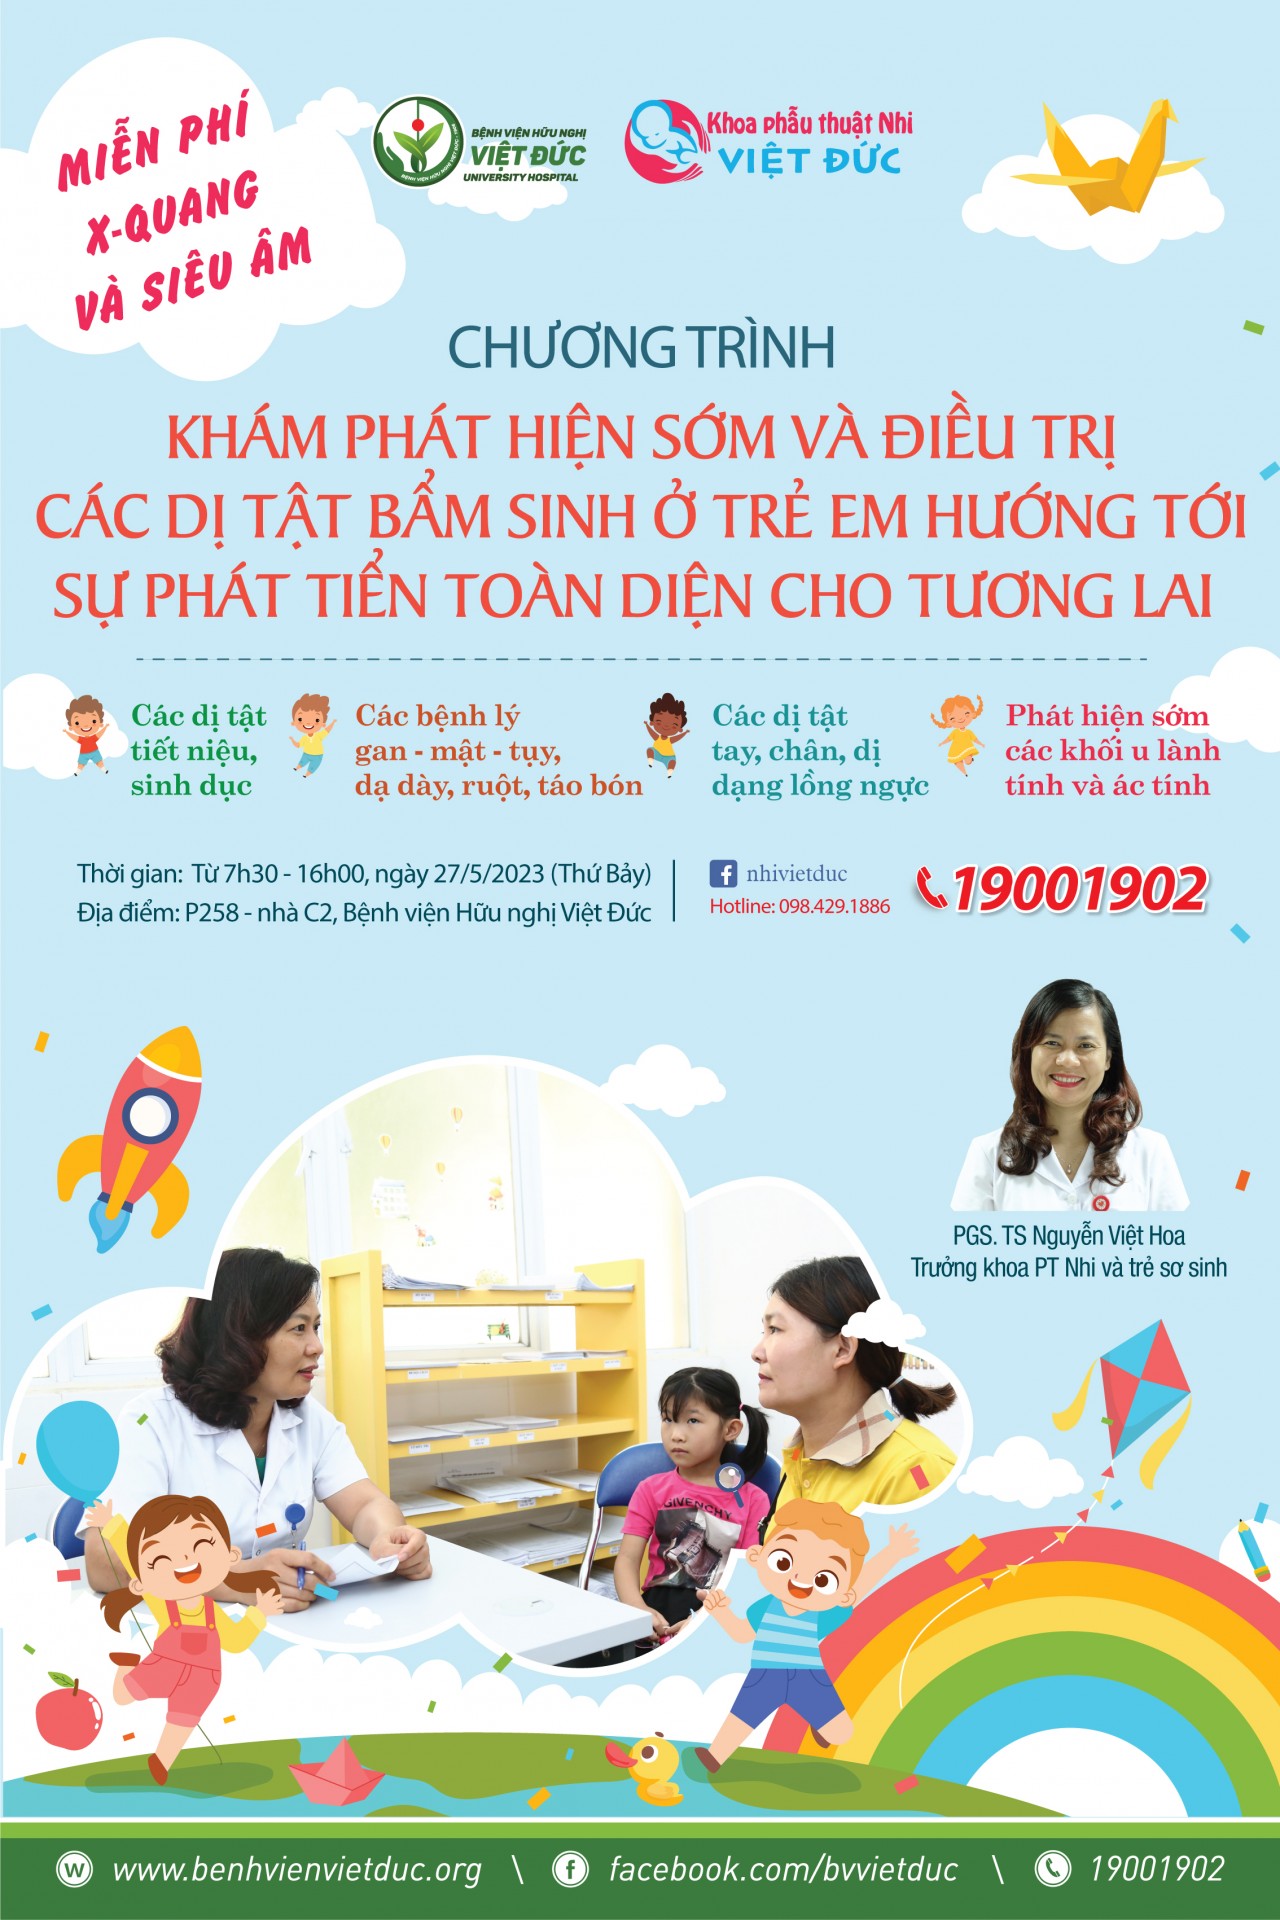 Hà Nội: Khám và điều trị miễn phí các dị tật bẩm sinh ở trẻ em